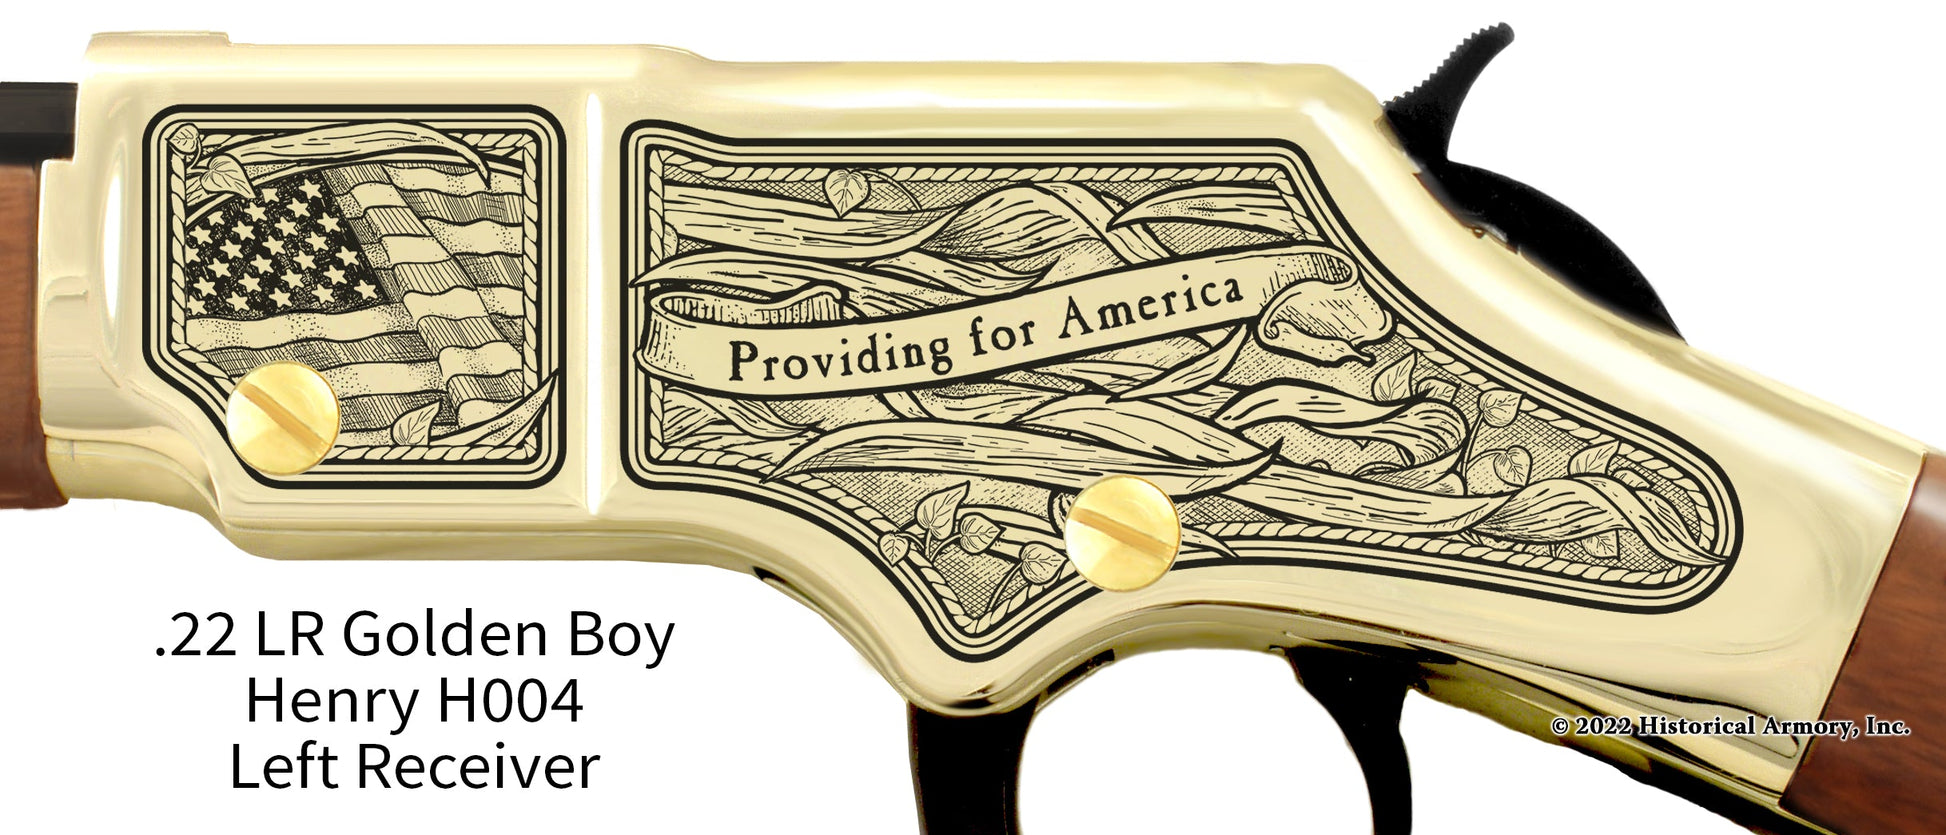 Arkansas Agricultural Heritage Engraved Henry Golden Boy Rifle